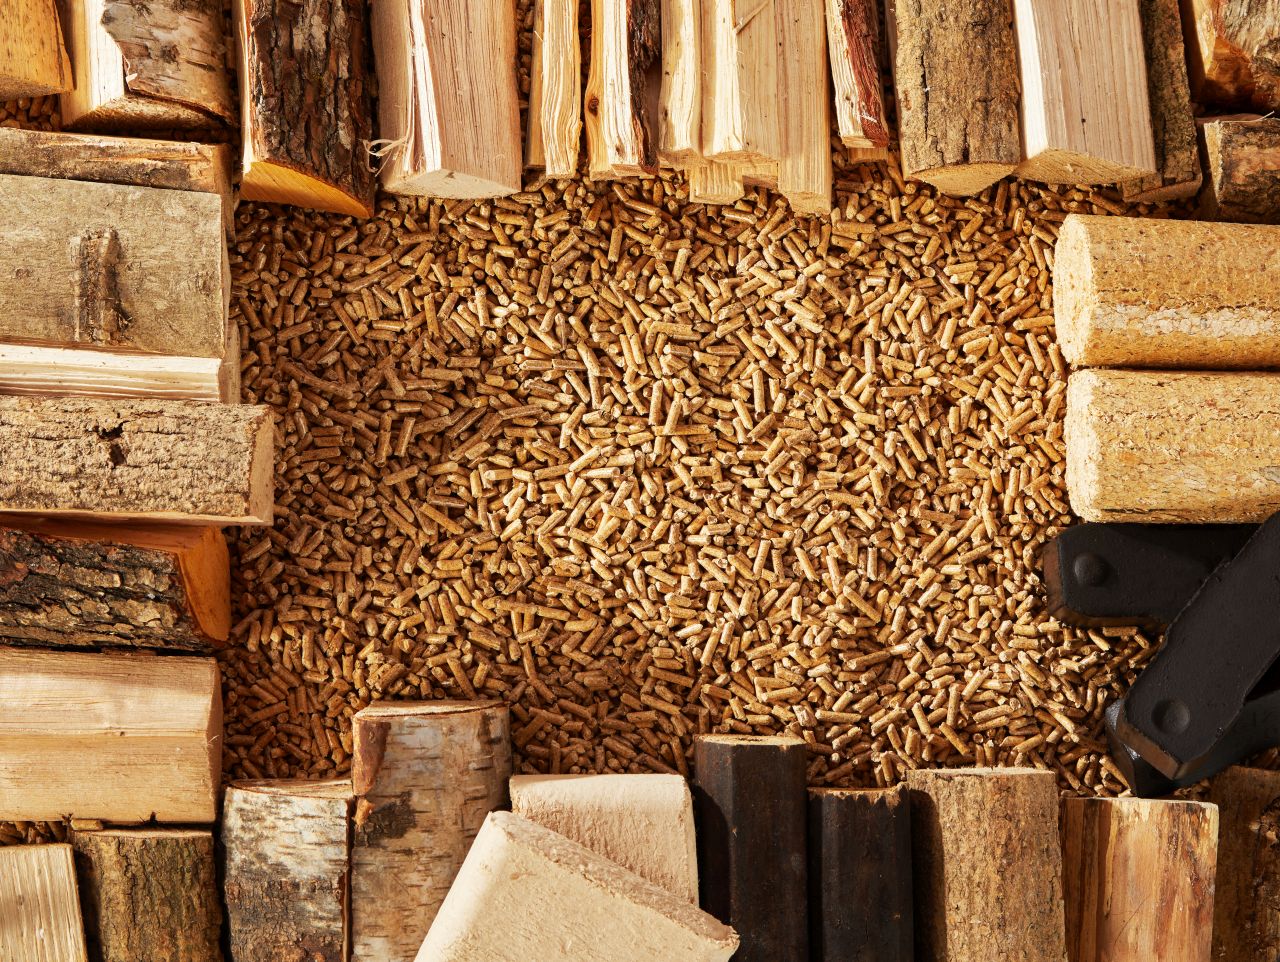 Jak przerobić biomasę na jakościowy pellet?